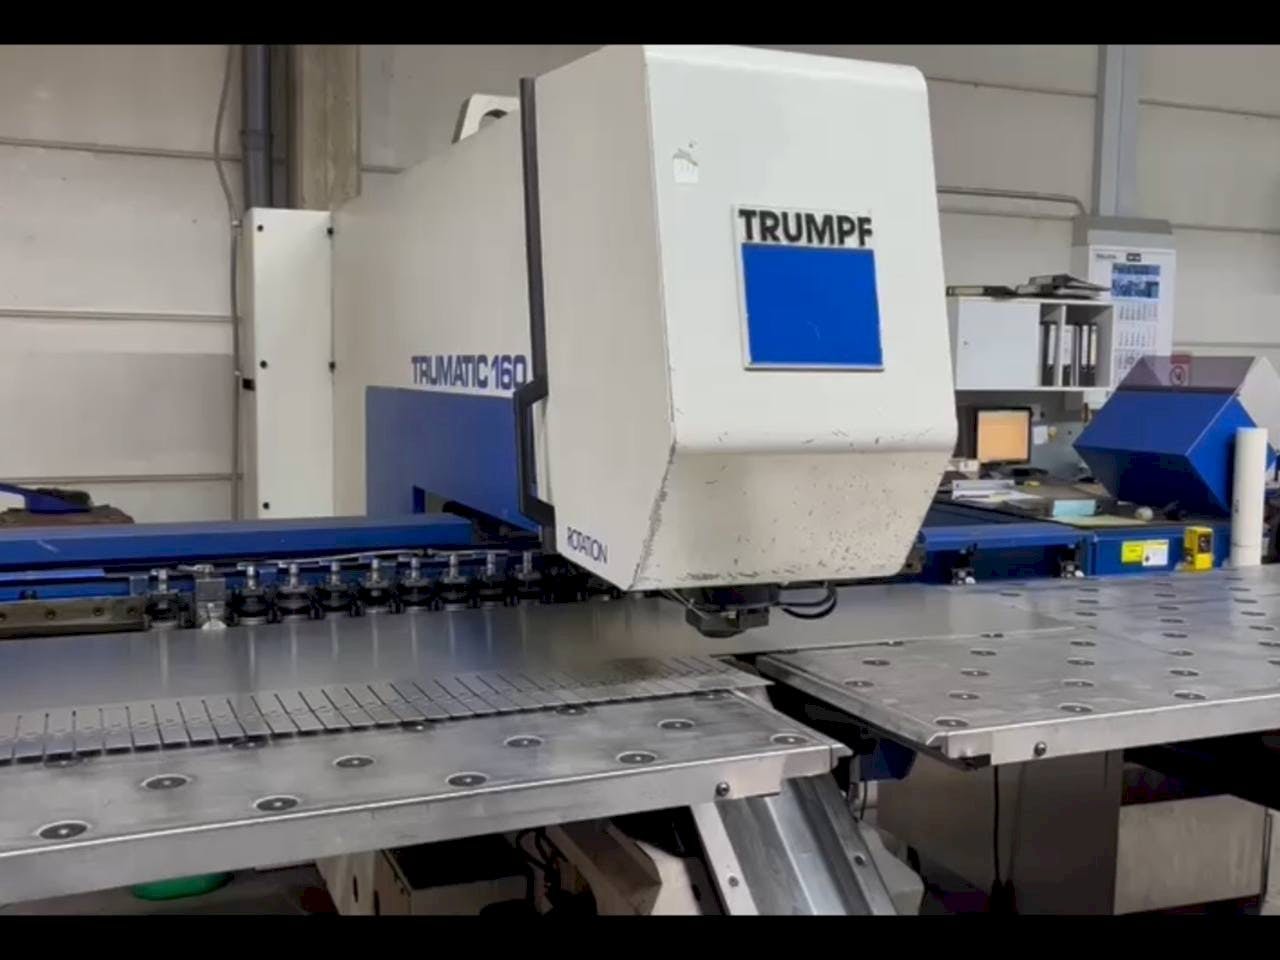 Vooraanzicht  van Trumpf Trumatic 160  machine